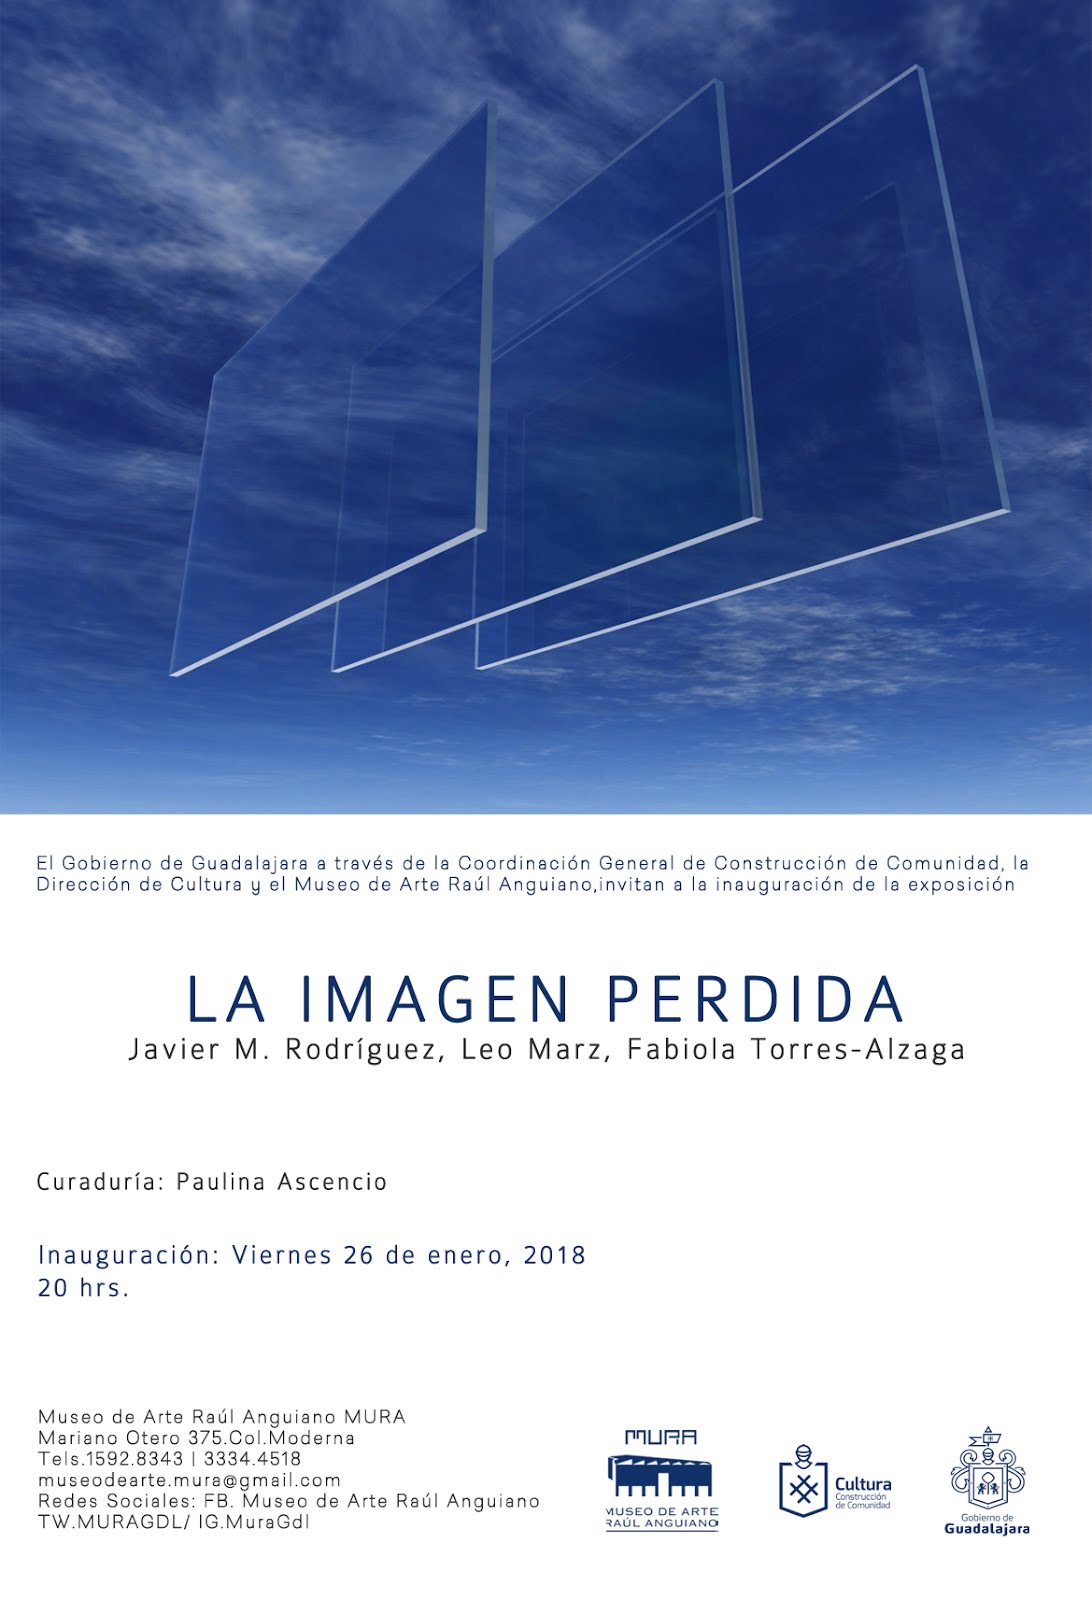 "La Imagen Perdida" curated by Paulina Ascencio